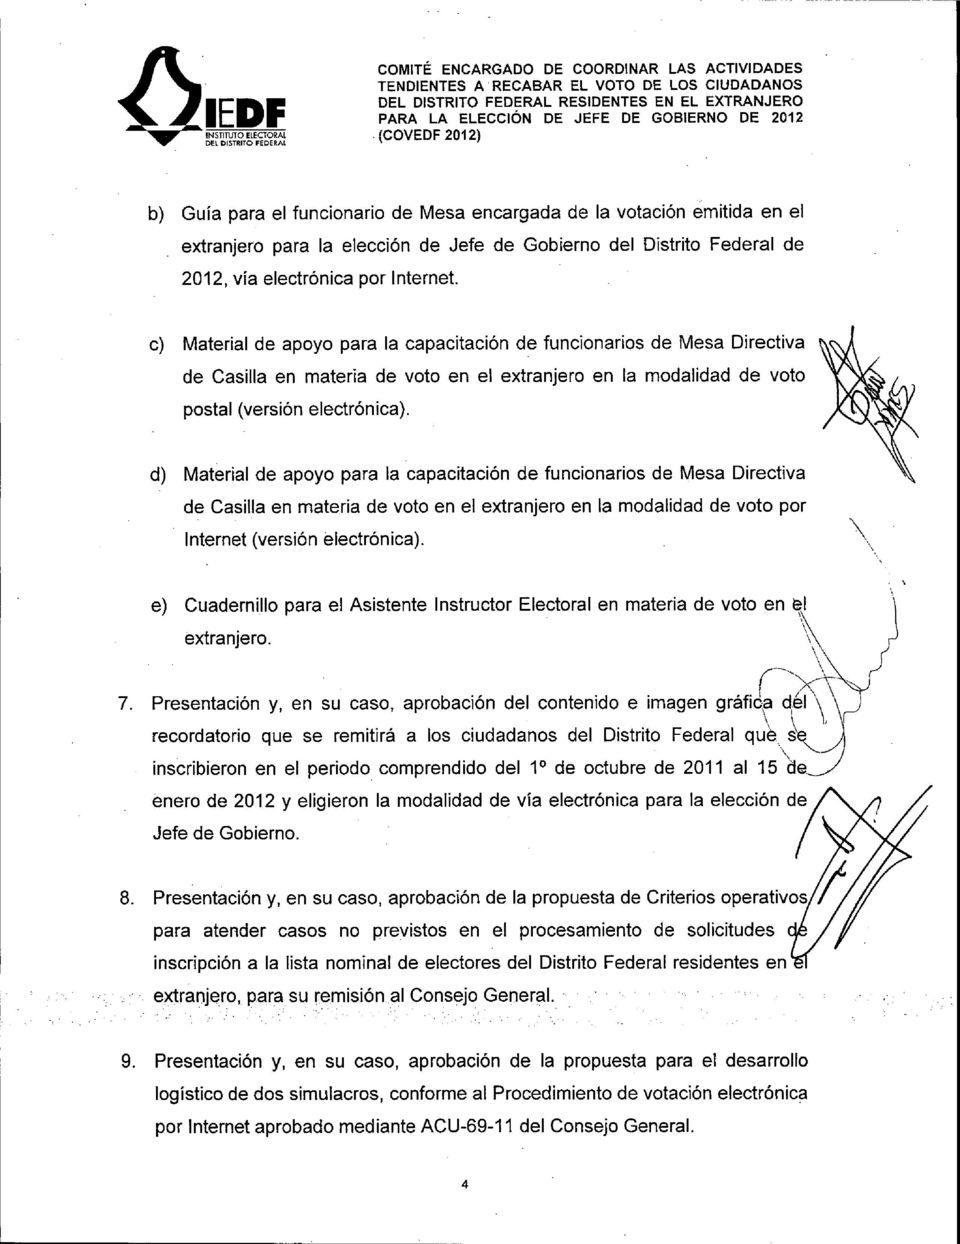 c) Material de apoyo para la capacitación de funcionarios de Mesa Directiva de Casilla en materia de voto en el extranjero en la modalidad de voto postal (versión electrónica).